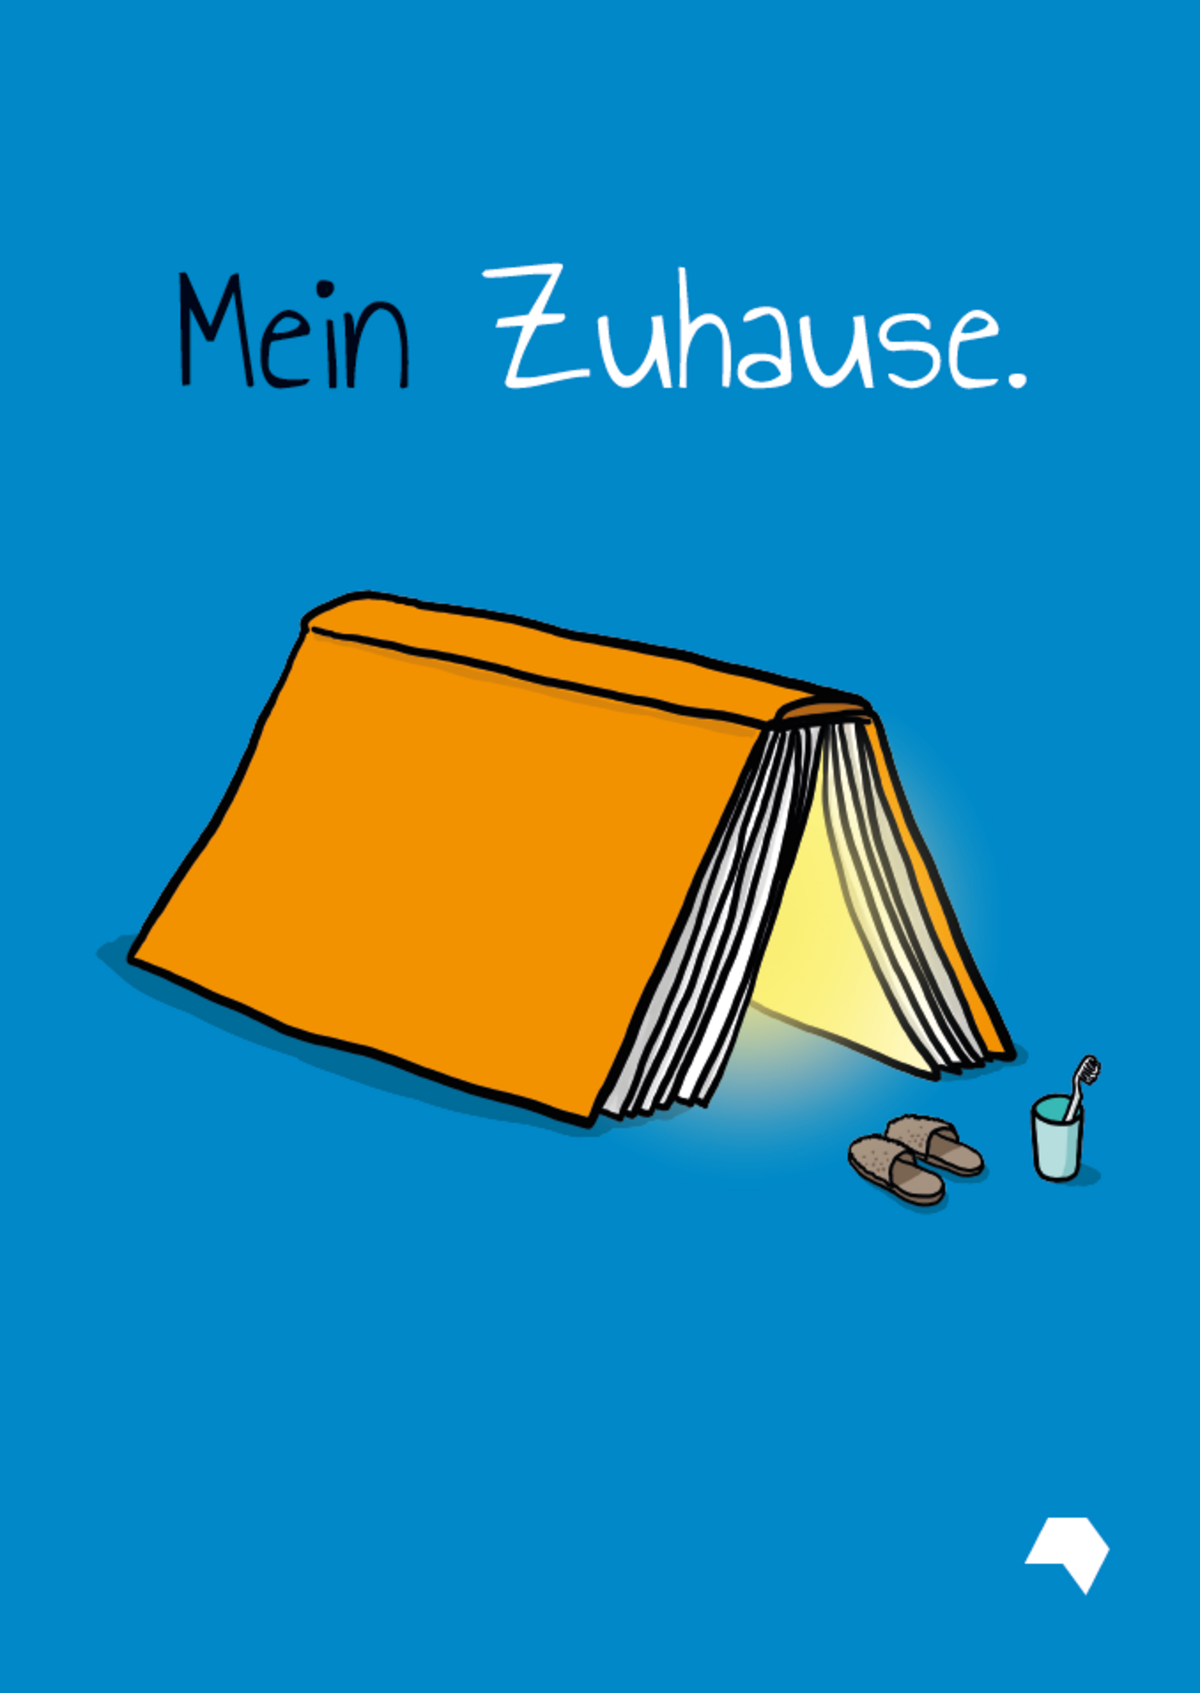 Schwarz/weiße Schrift auf blauen Hintergrund: "Mein Zuhause" inkl. Zeichnung eines Buches, dass als Zelt fungiert 